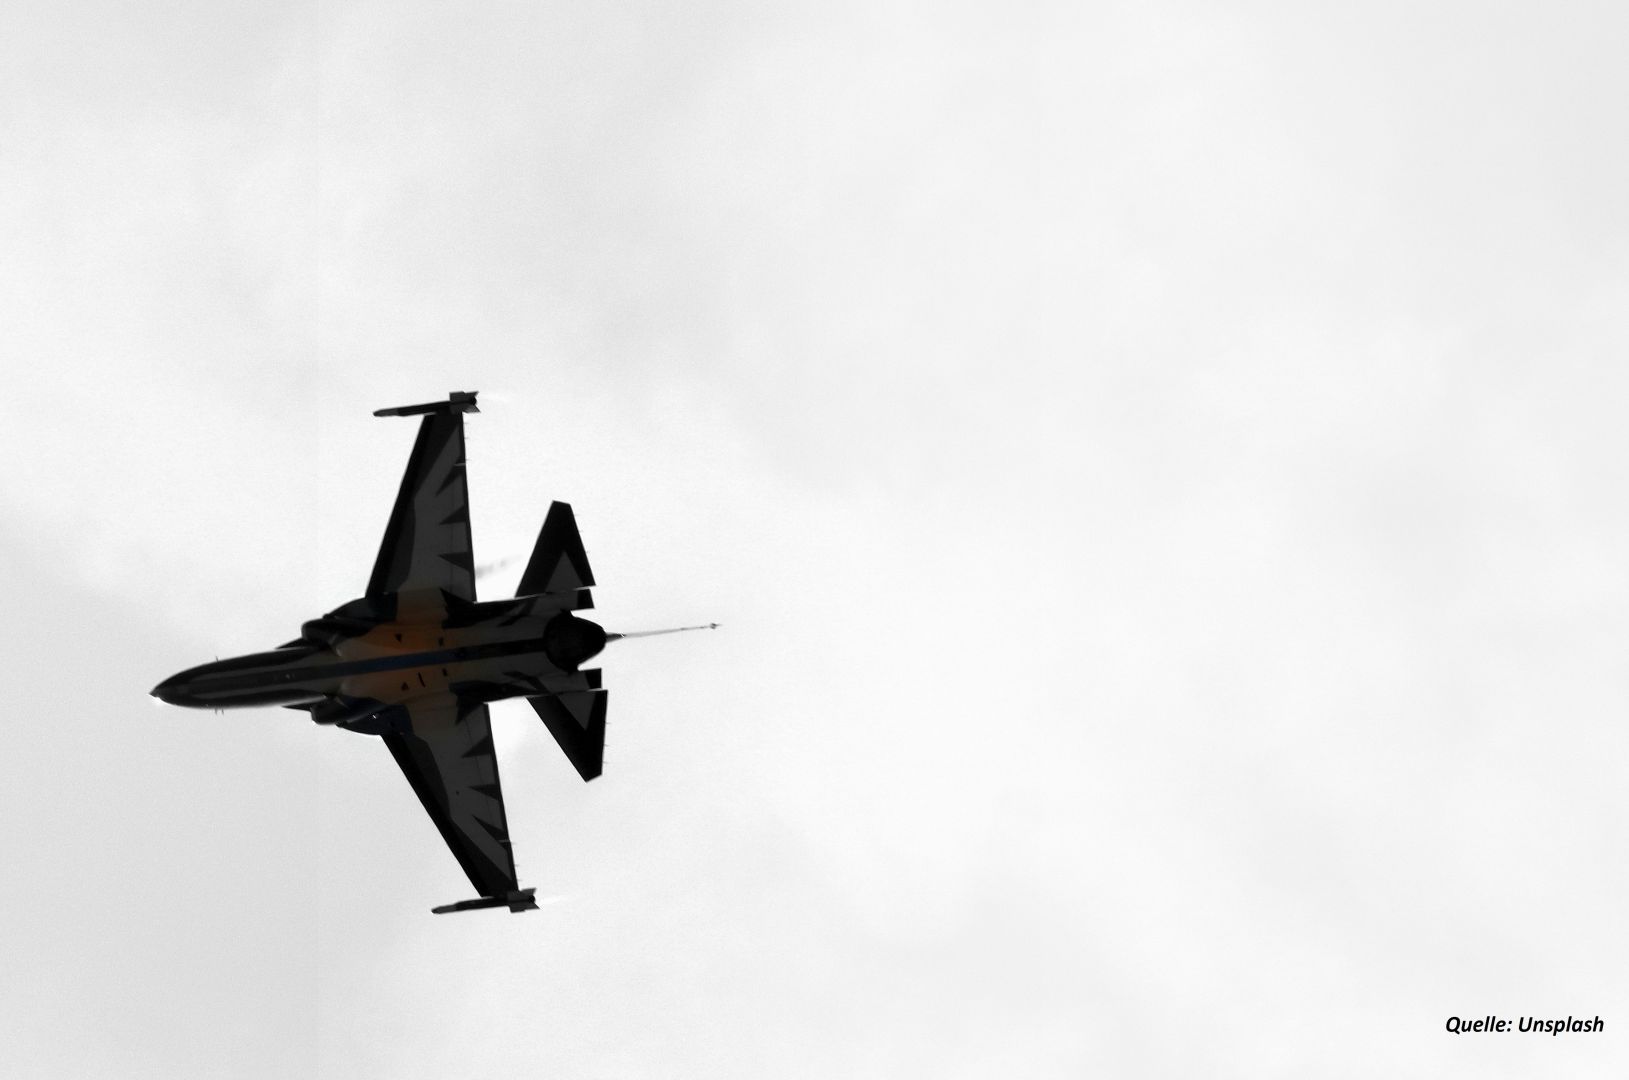 In Schweden begann man über sofortige Lieferungen von Gripen-Kampfflugzeugen an die Ukraine zu sprechen